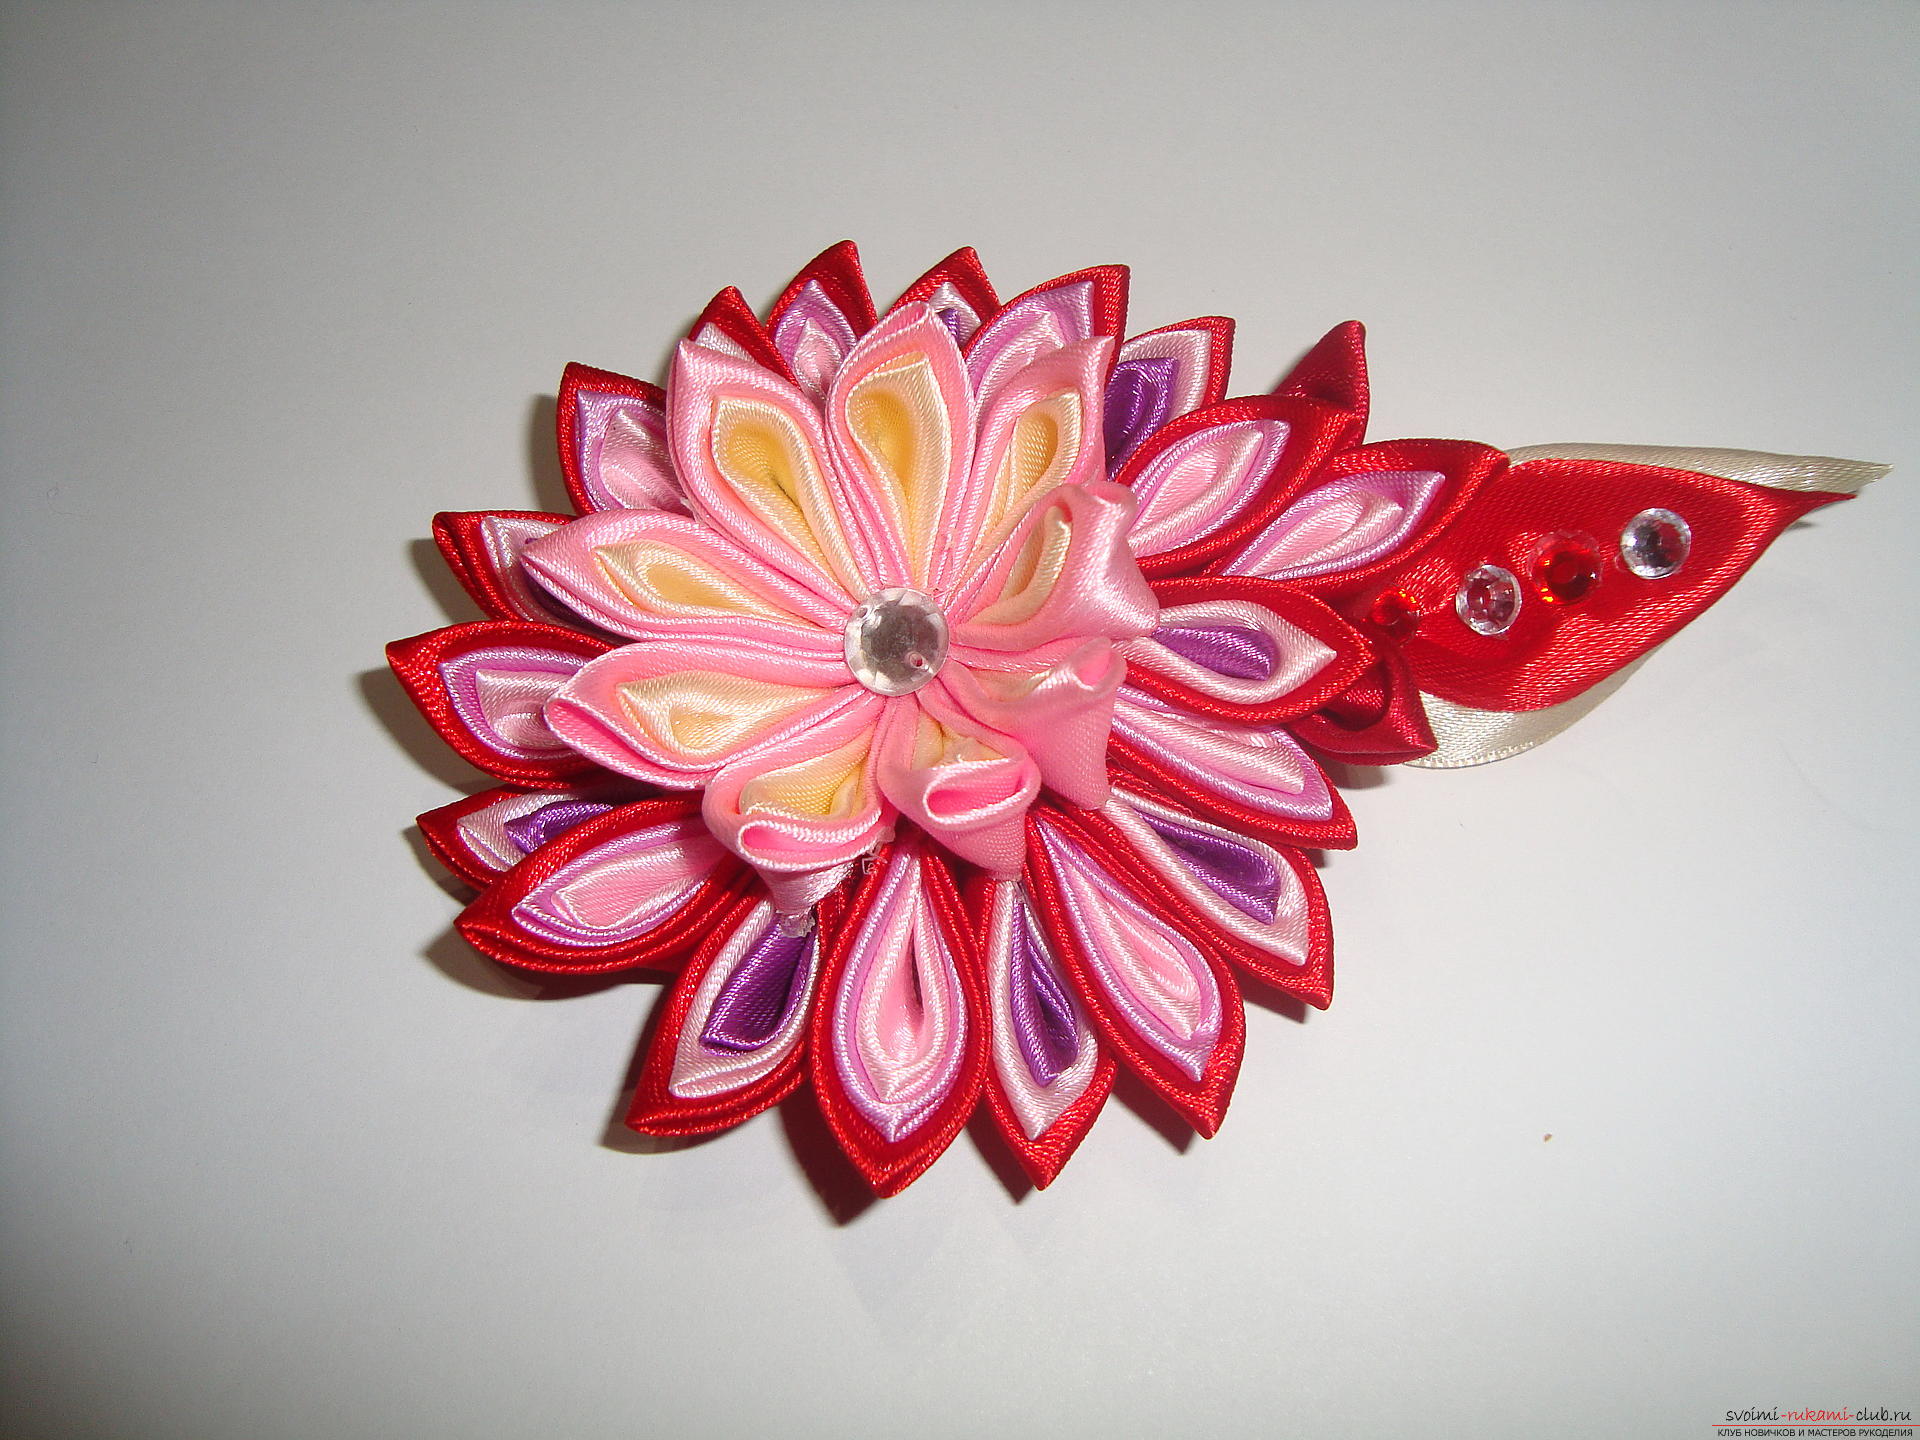 Подробное руководство с фото по изготовлению заколки в форме цветка с разноцветными лепестками в технике канзаши. Фото №1